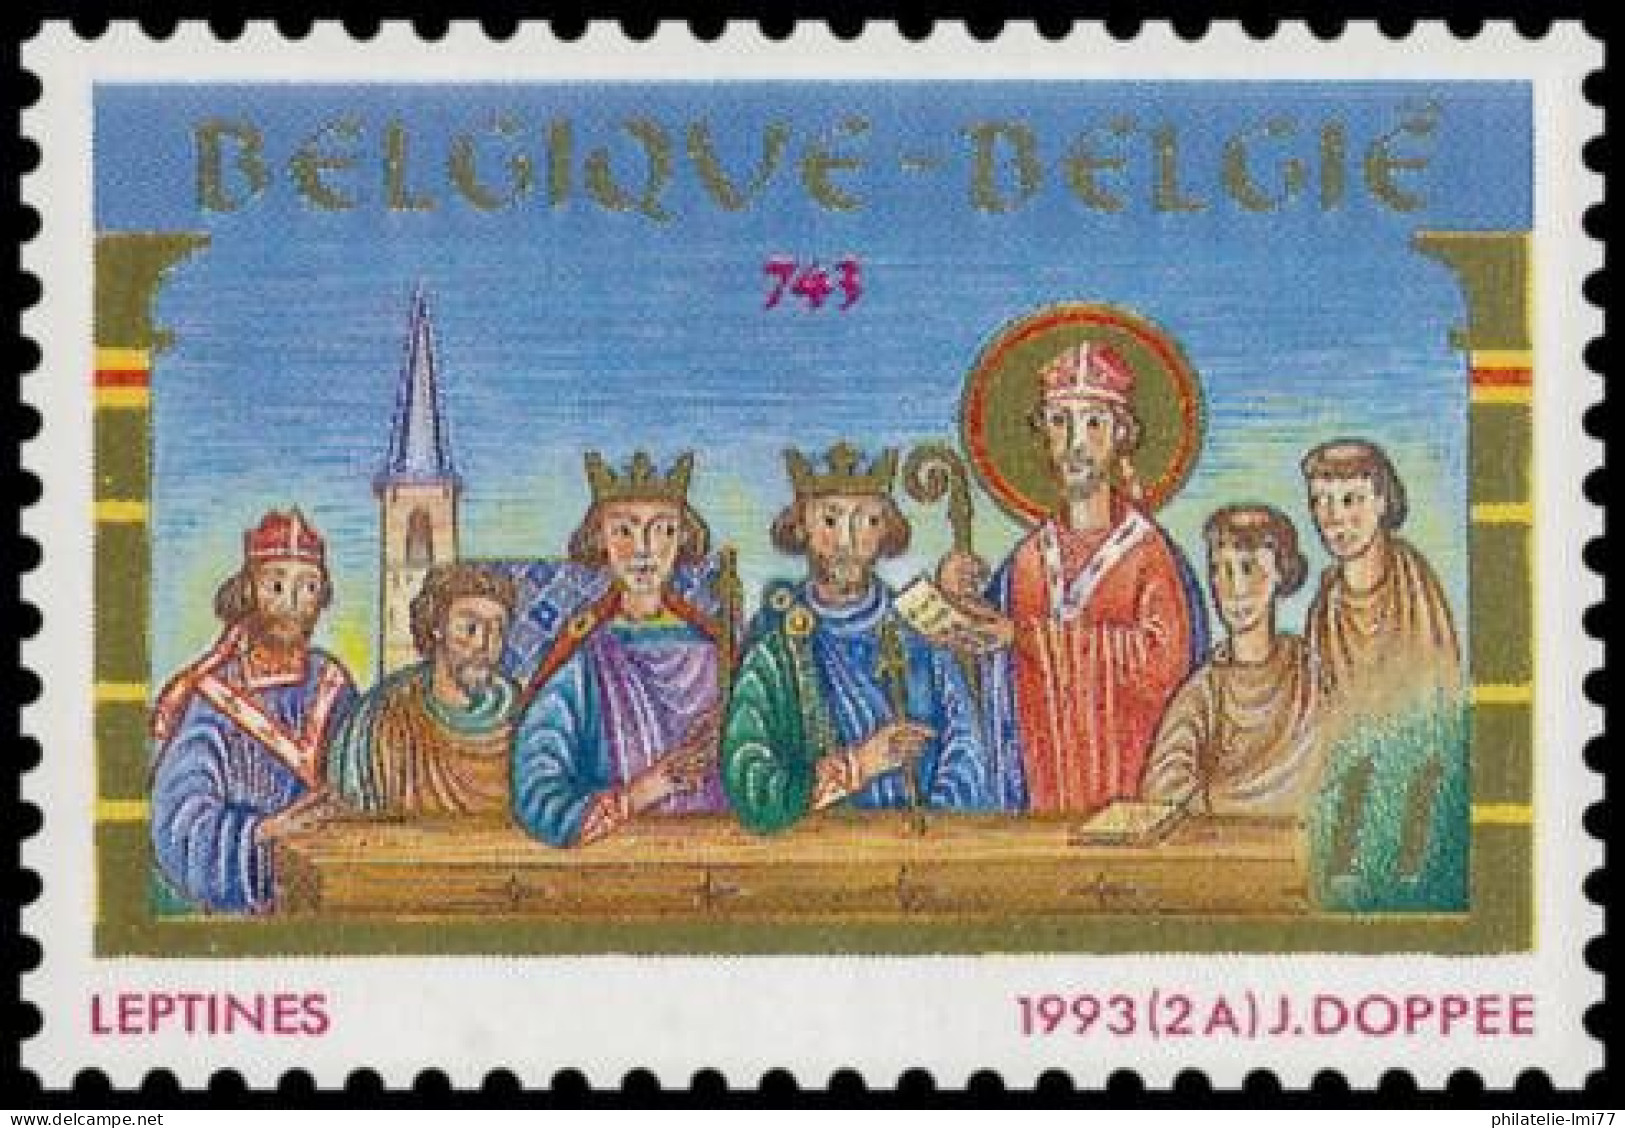 Timbre De Belgique N° 2491 Neuf Sans Charnière - Unused Stamps